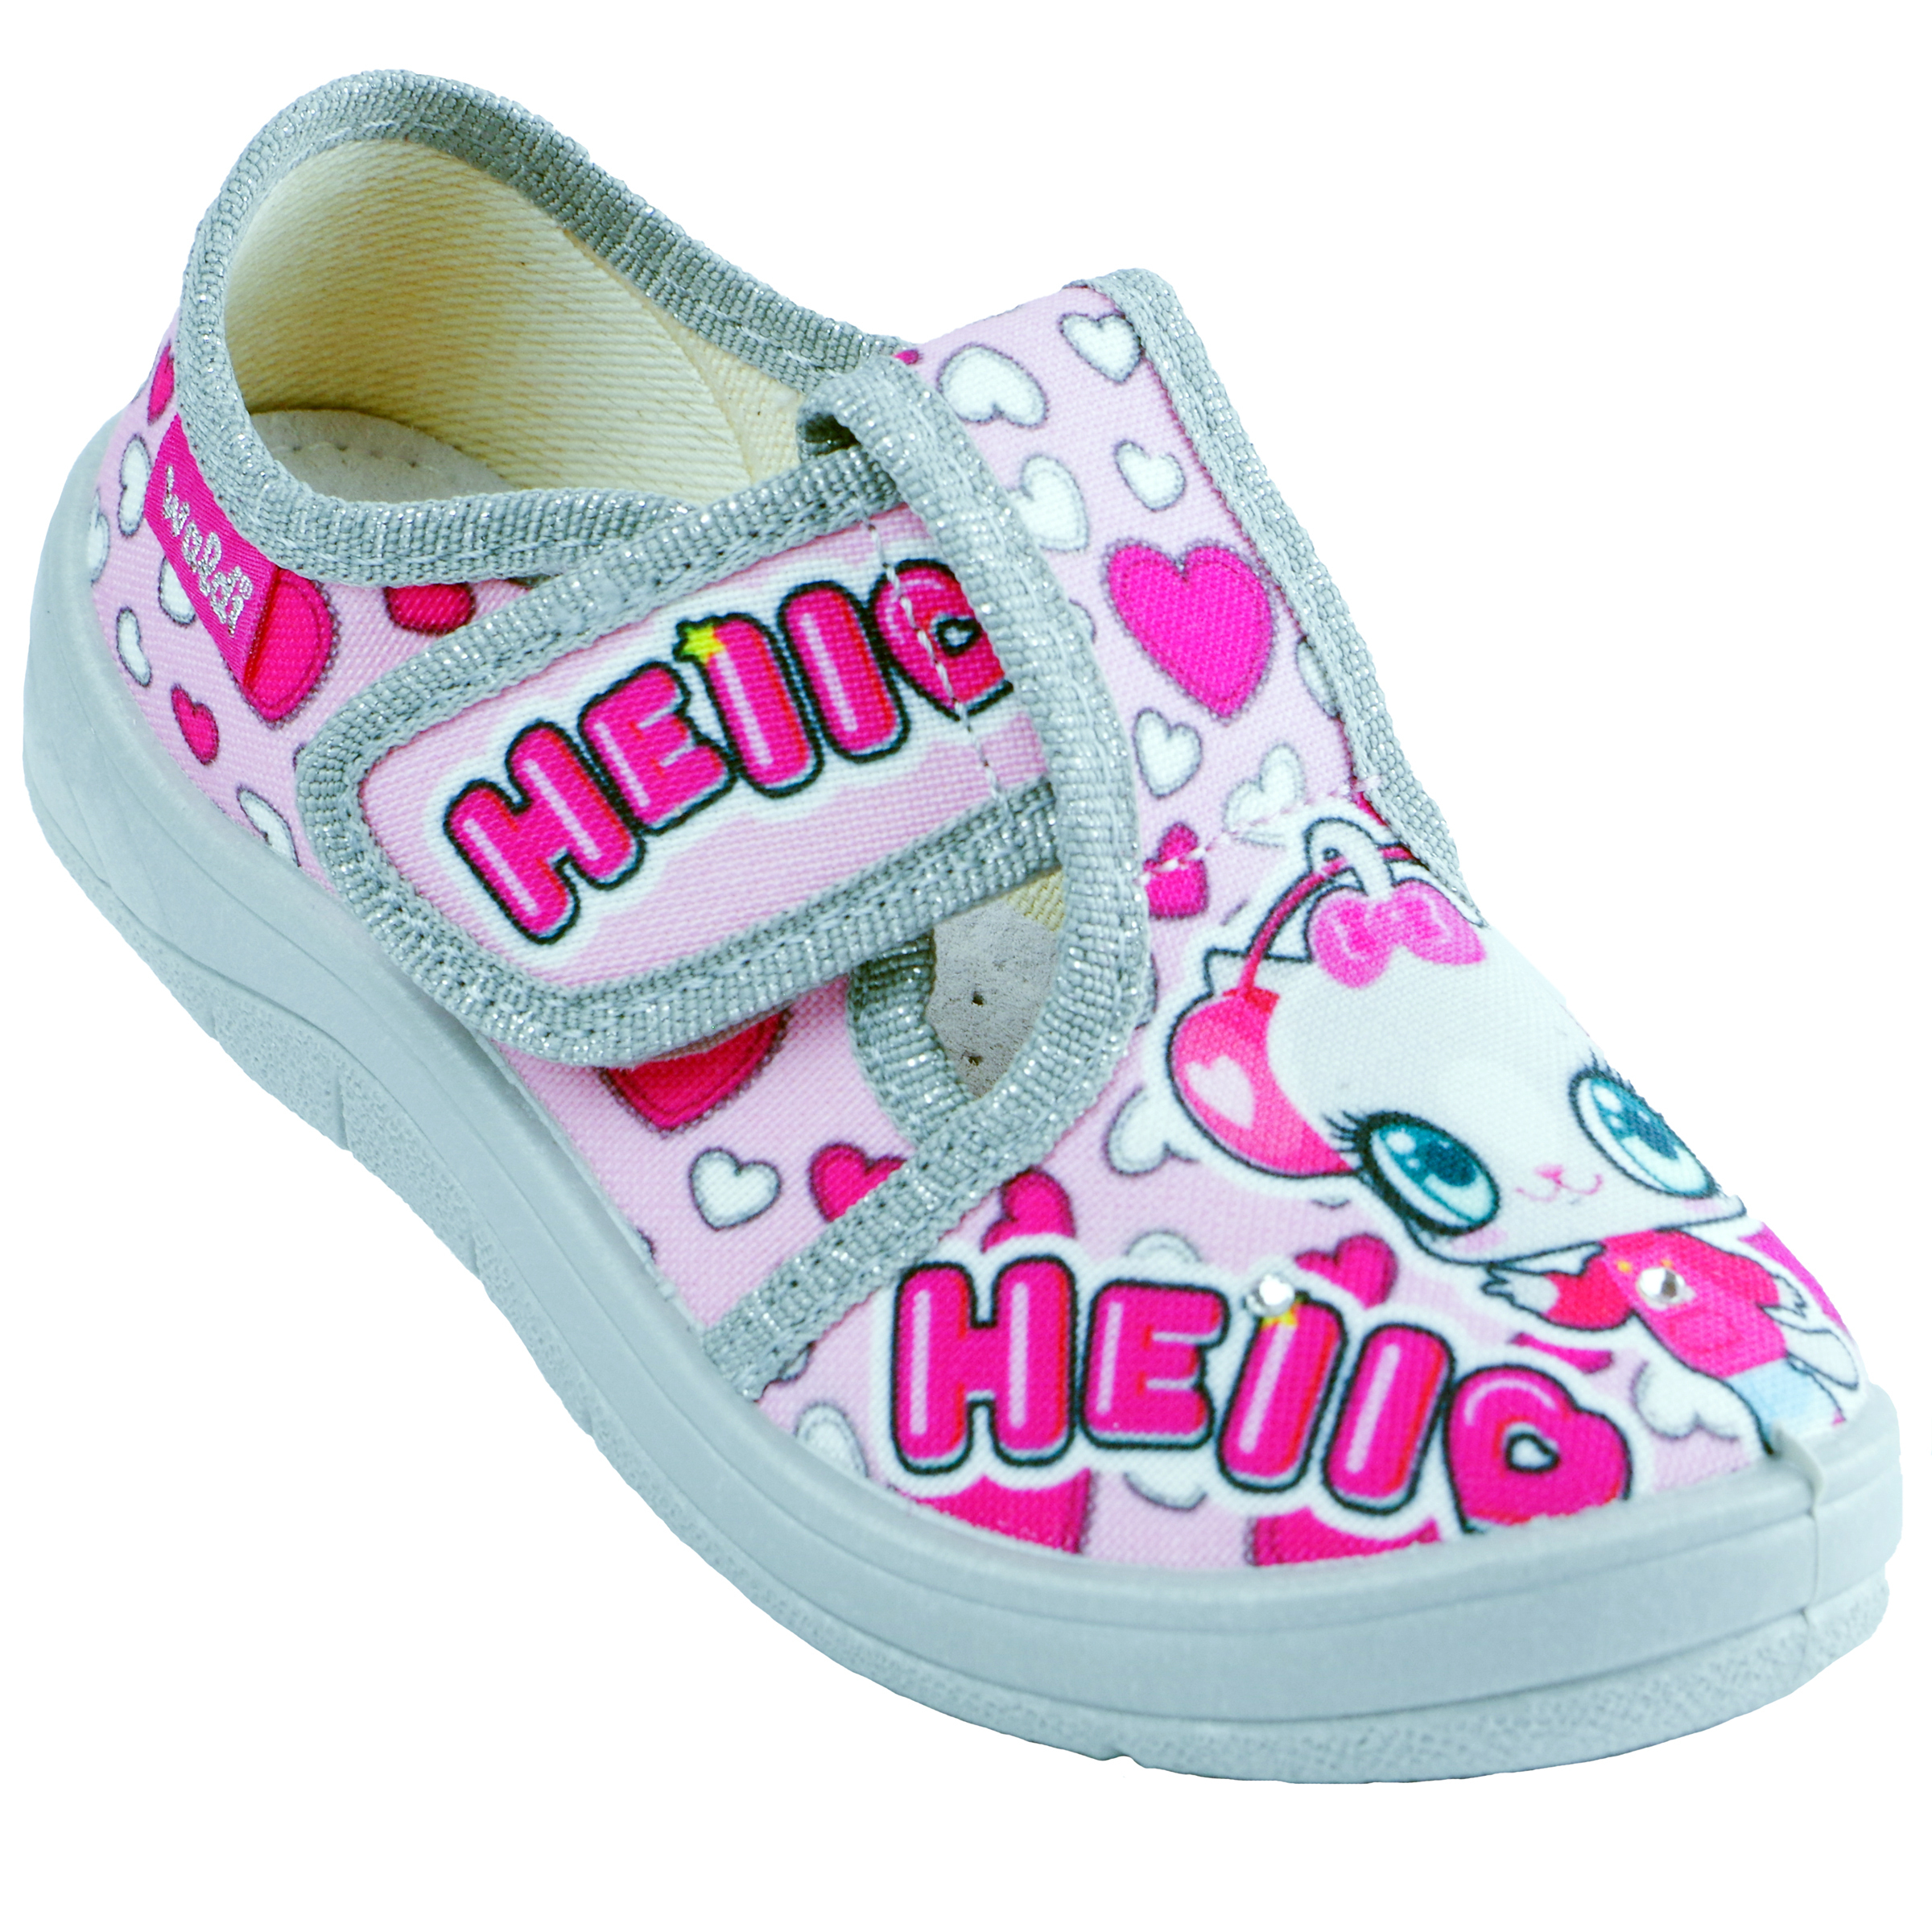 Текстильная обувь для девочек Тапочки Галя Hello (2127) цвет Розовый 24-30 размеры – Sole Kids